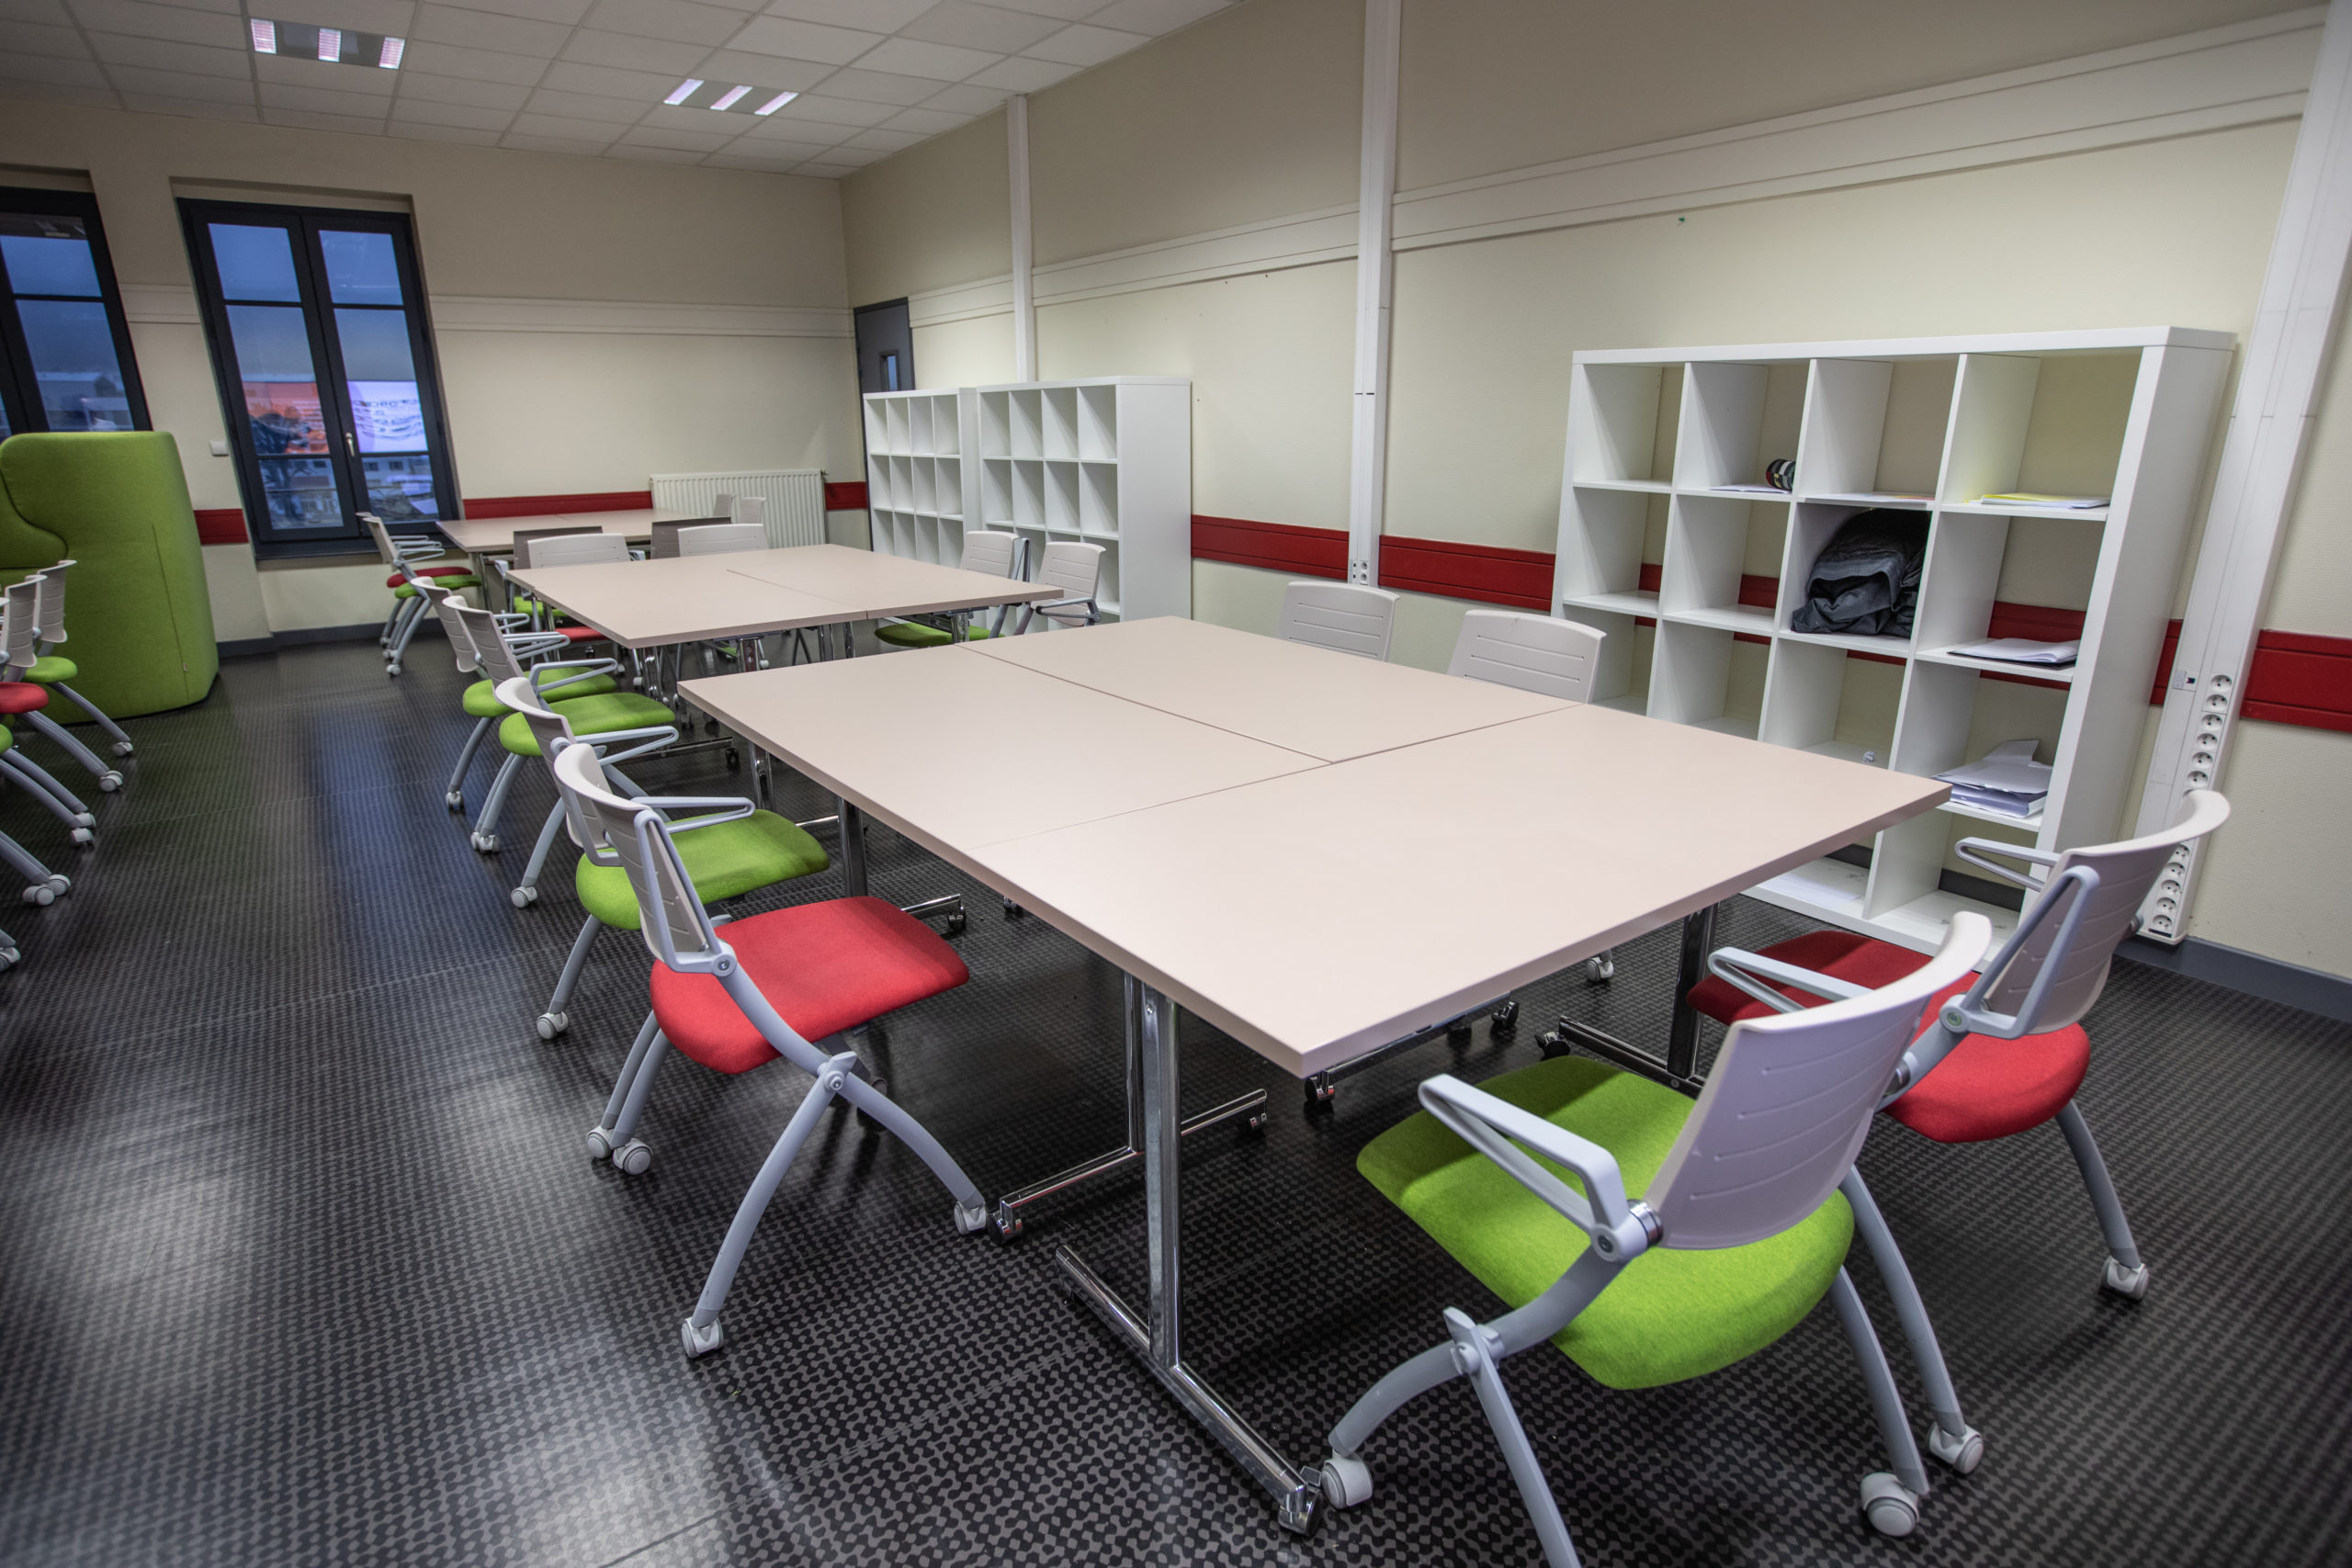 Salle des profs dans un établissement scolaire avec tables à plateau rabattable et chaises avec assise rabattable